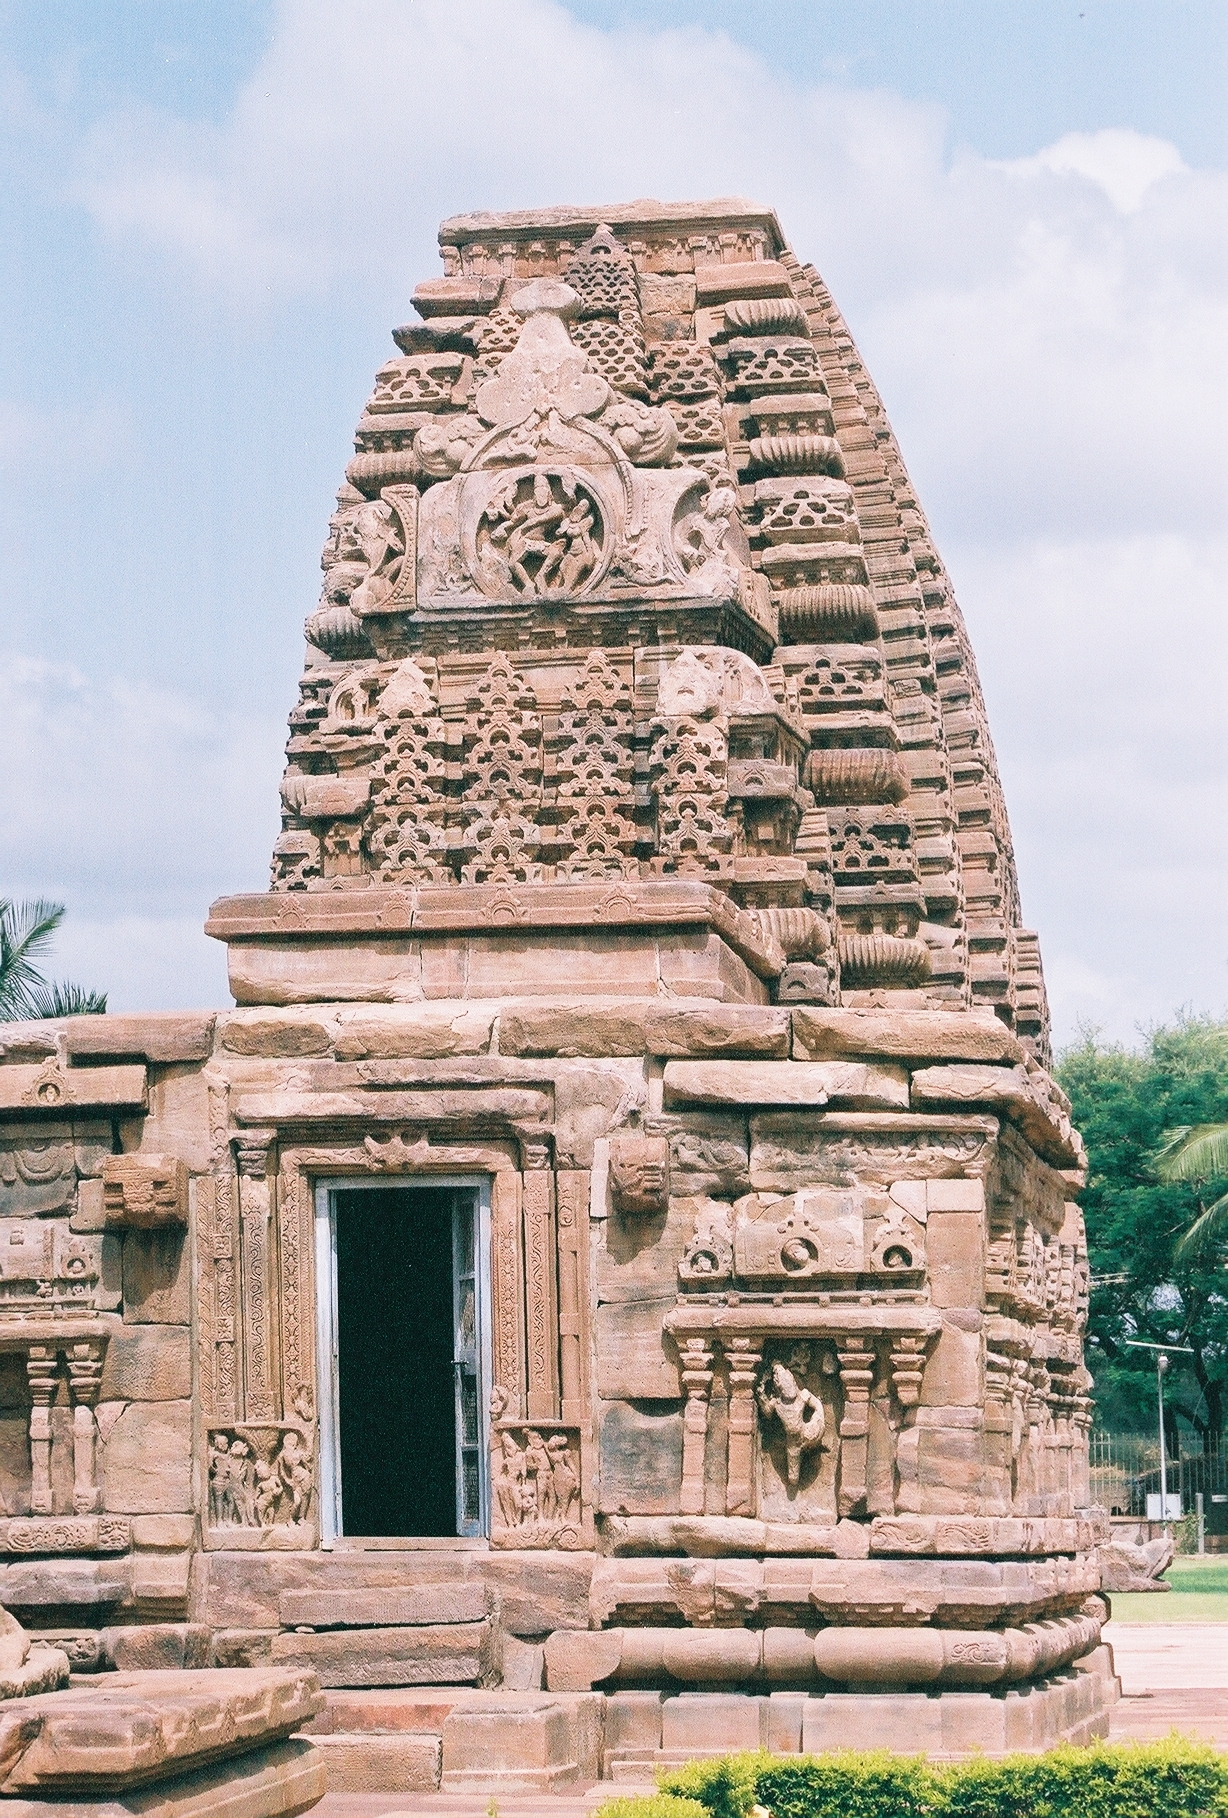 images/Kasivisvanatha_temple_at_Pattadakal.jpg